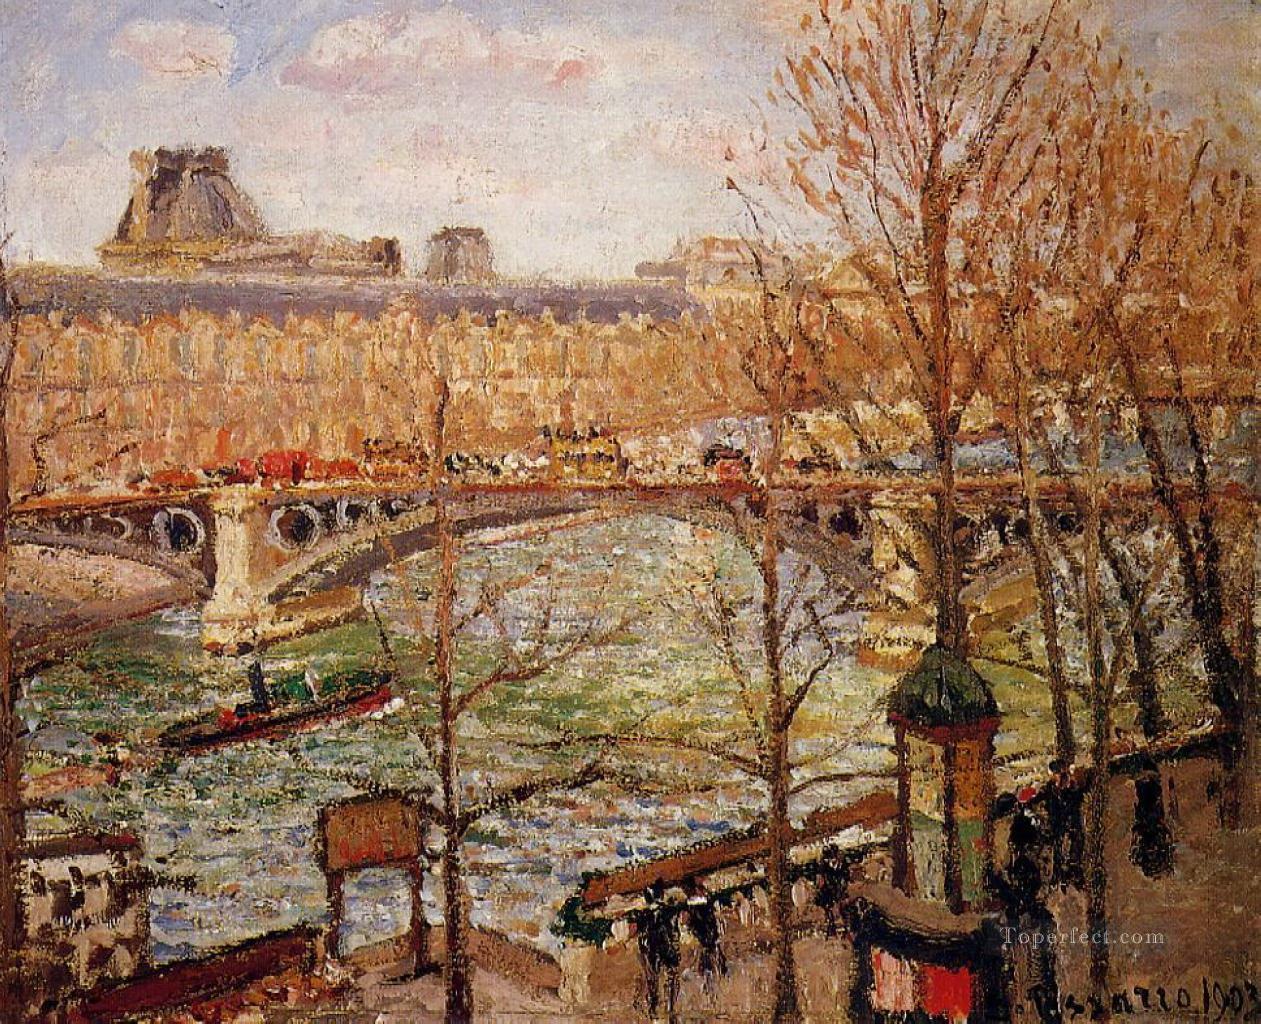 カルーセル橋の午後 1903年 カミーユ・ピサロ油絵